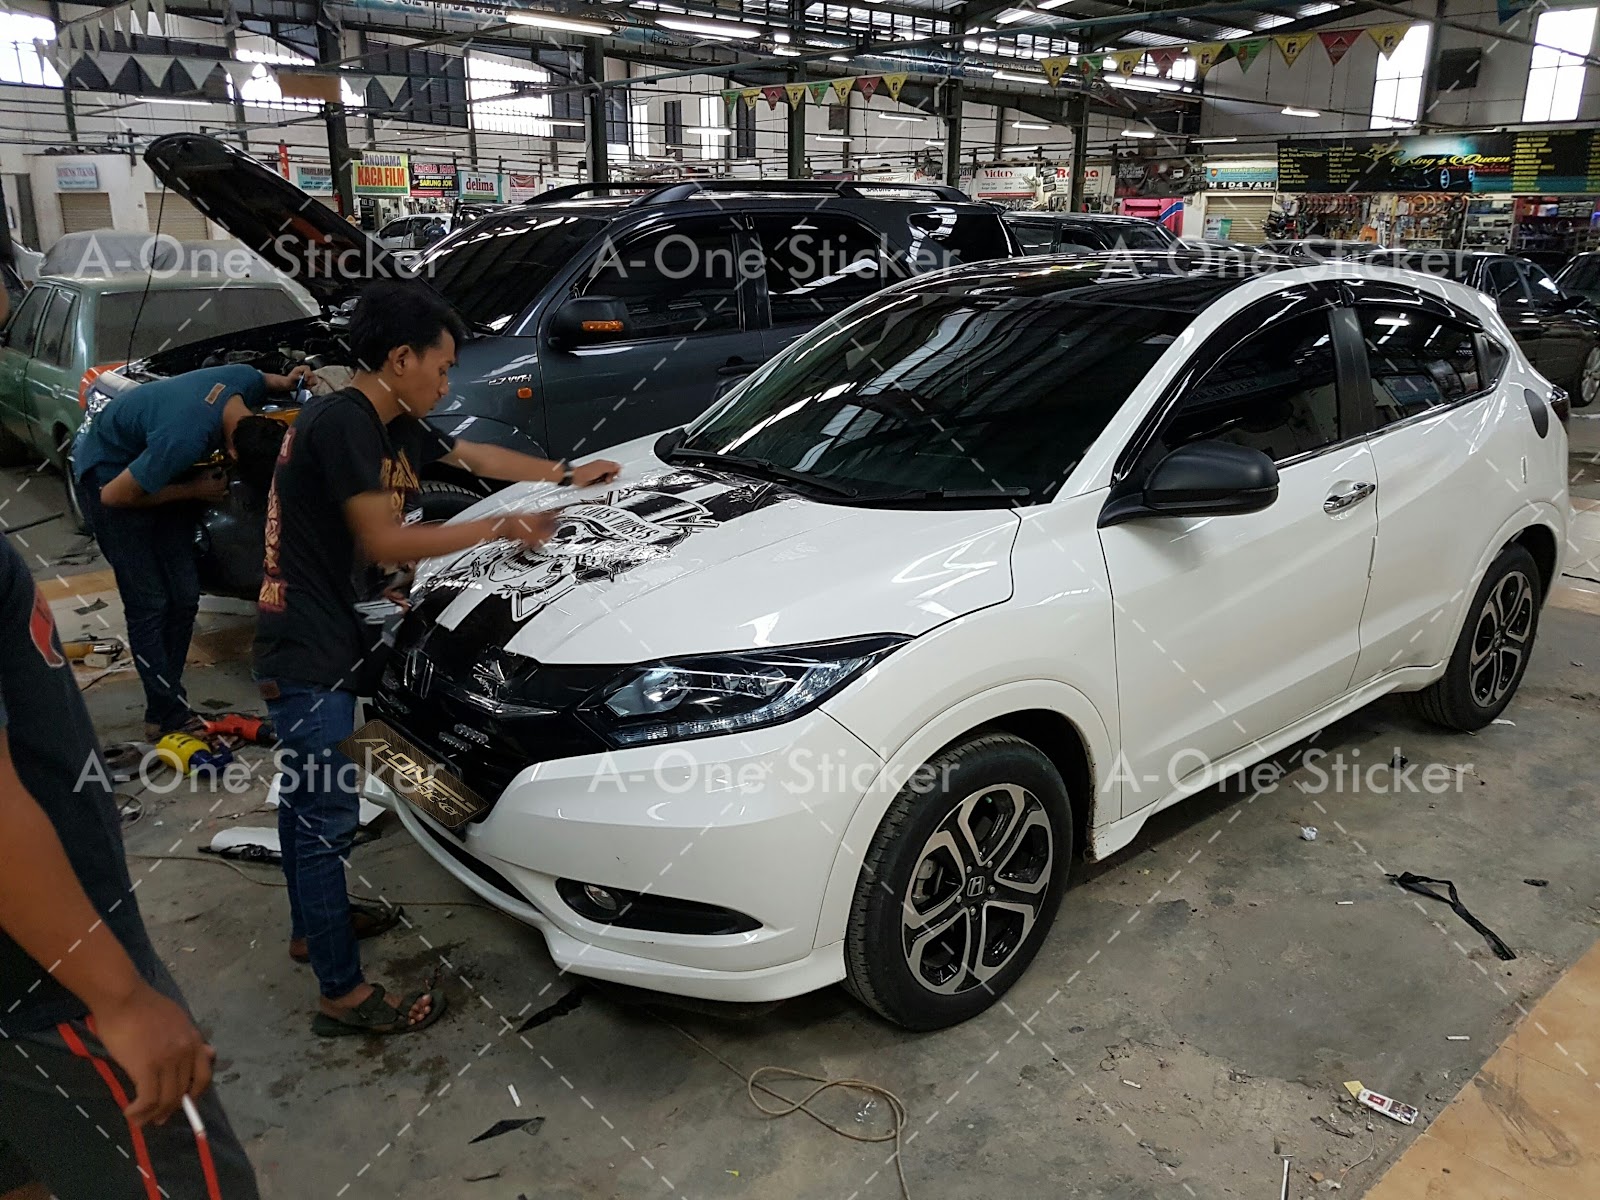 Kumpulan Cutting Sticker Mobil Di Jakarta Terlengkap Rekanotomotif